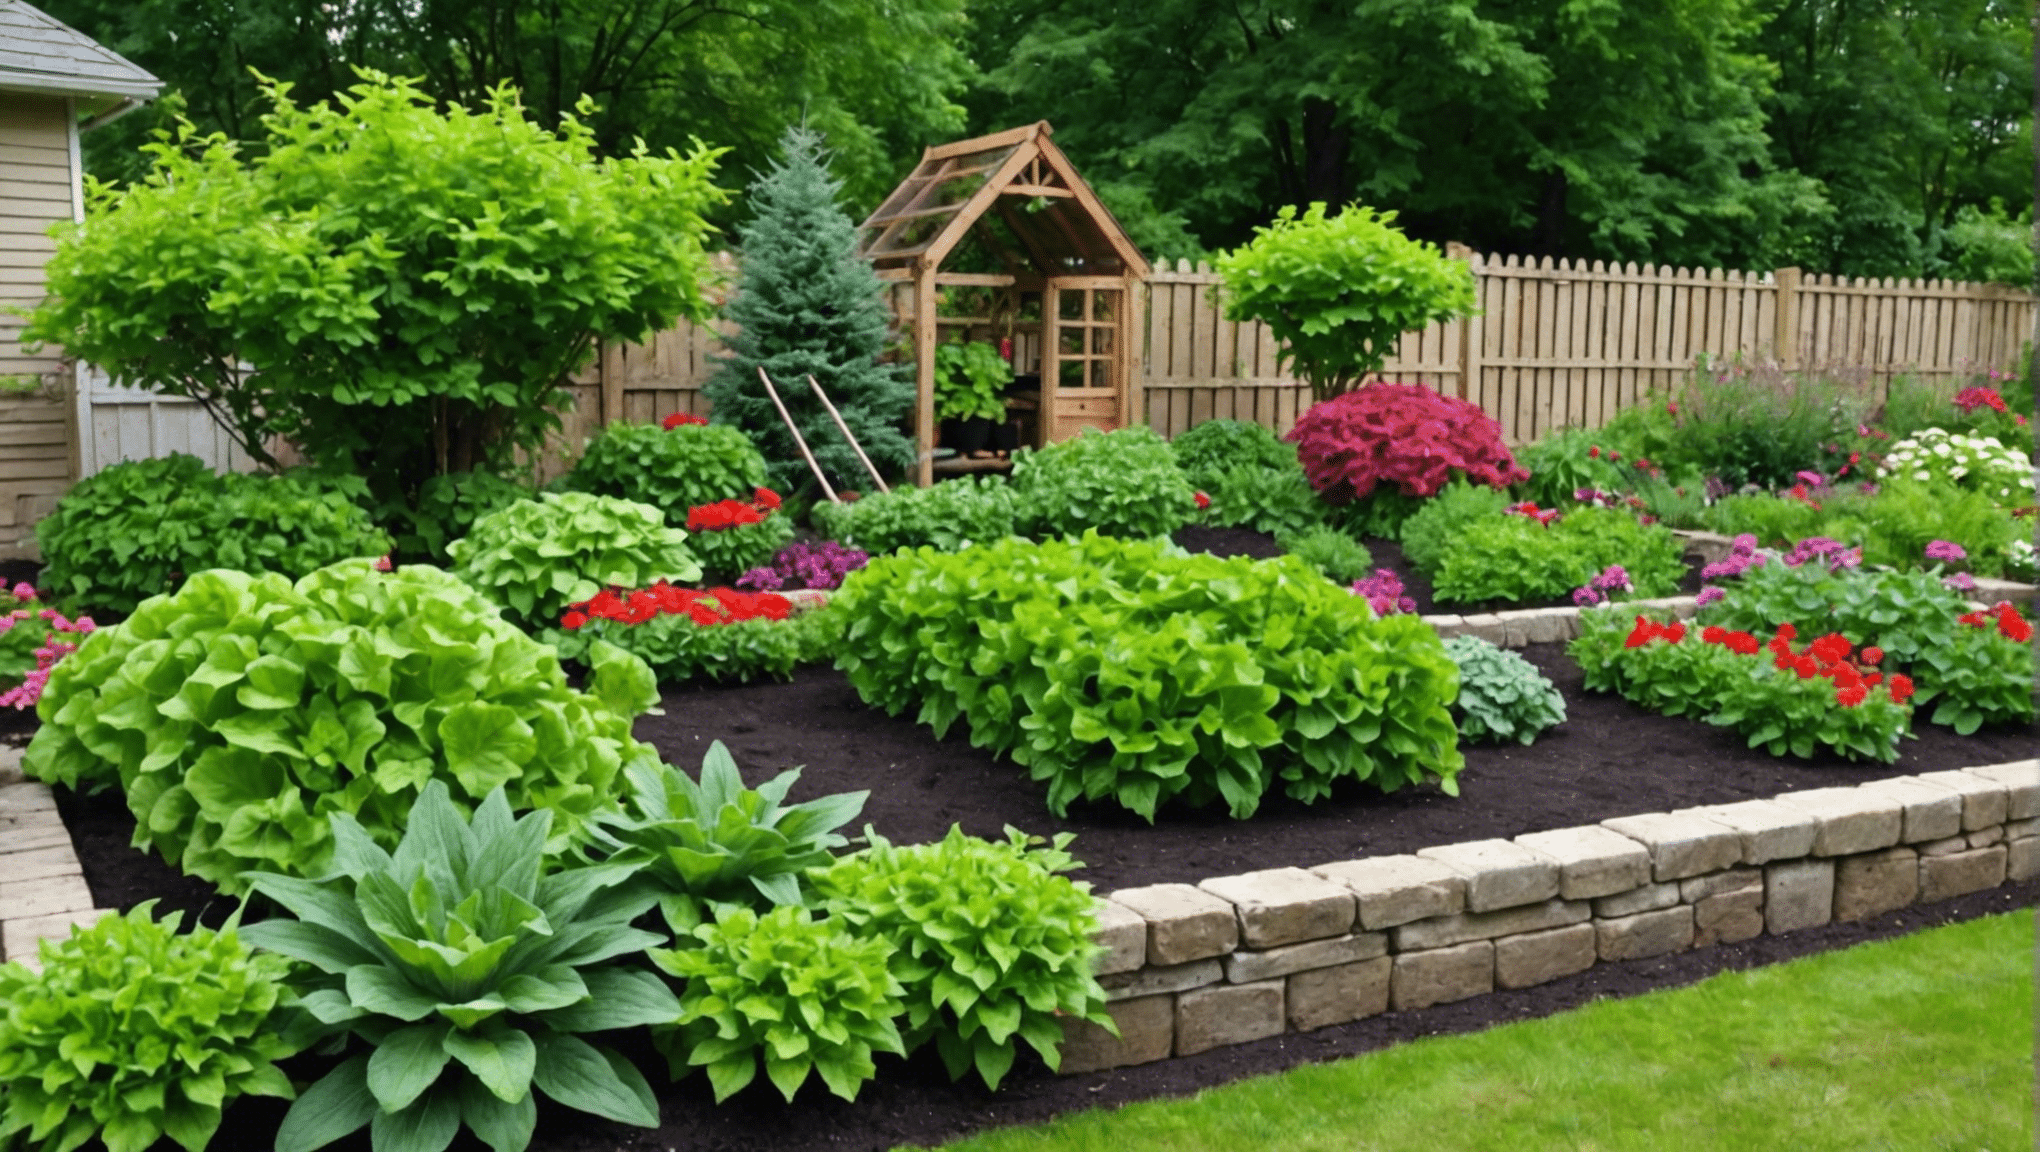 upptäck praktiska och budgetvänliga tips för grönsaksodling i ditt utrymme med våra prisvärda trädgårdsidéer. kom igång med att skapa en blomstrande och ekonomisk grönsaksträdgård idag.